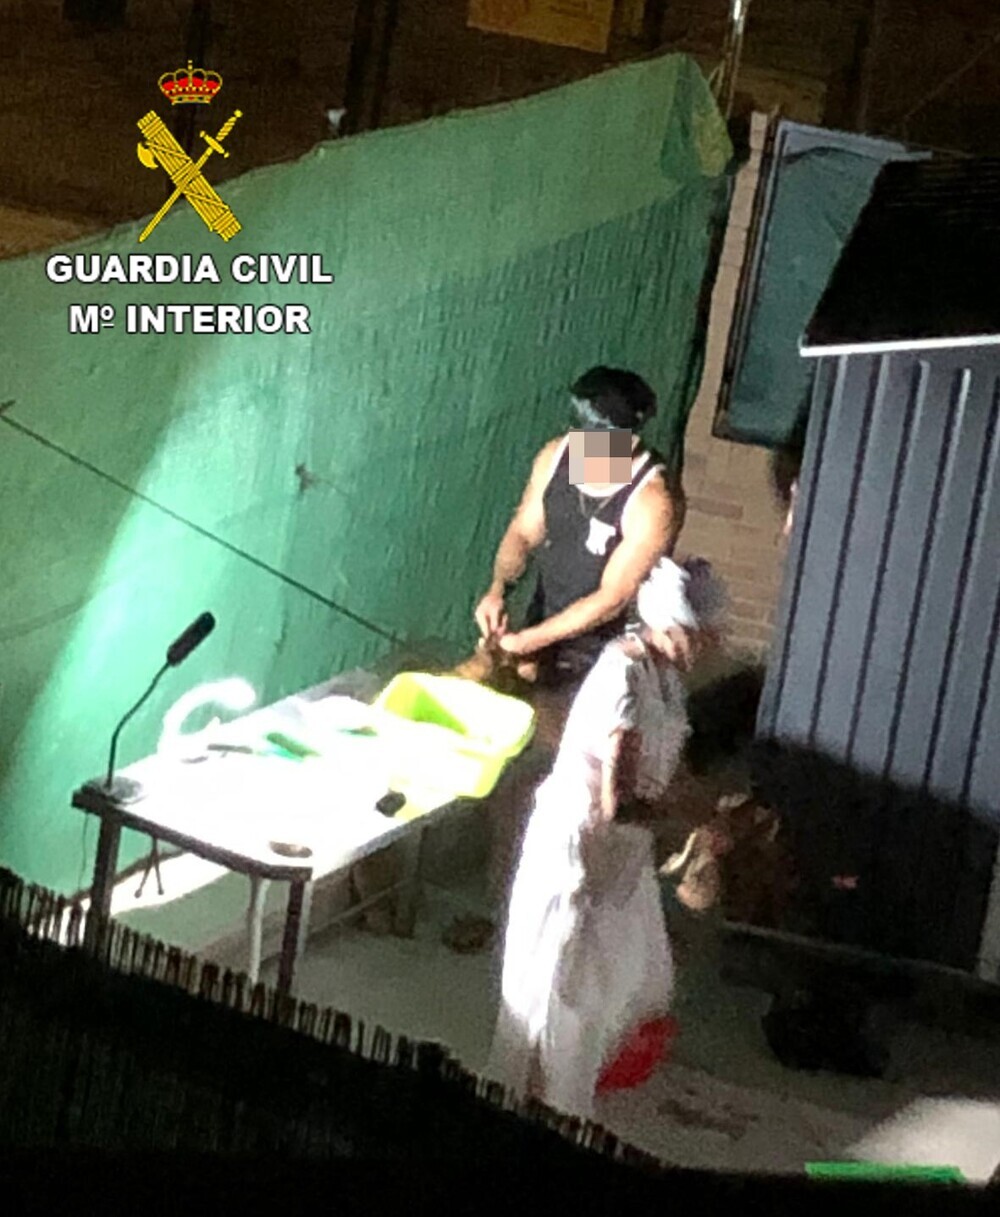 Un santero decapitaba cabras y gallos en Yuncos